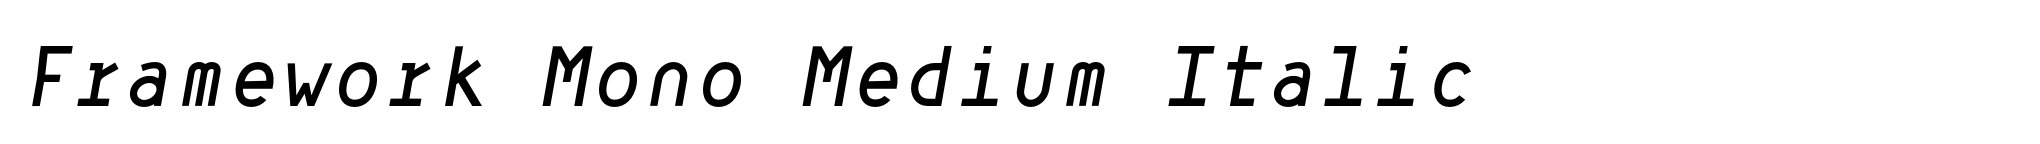 Framework Mono Medium Italic image